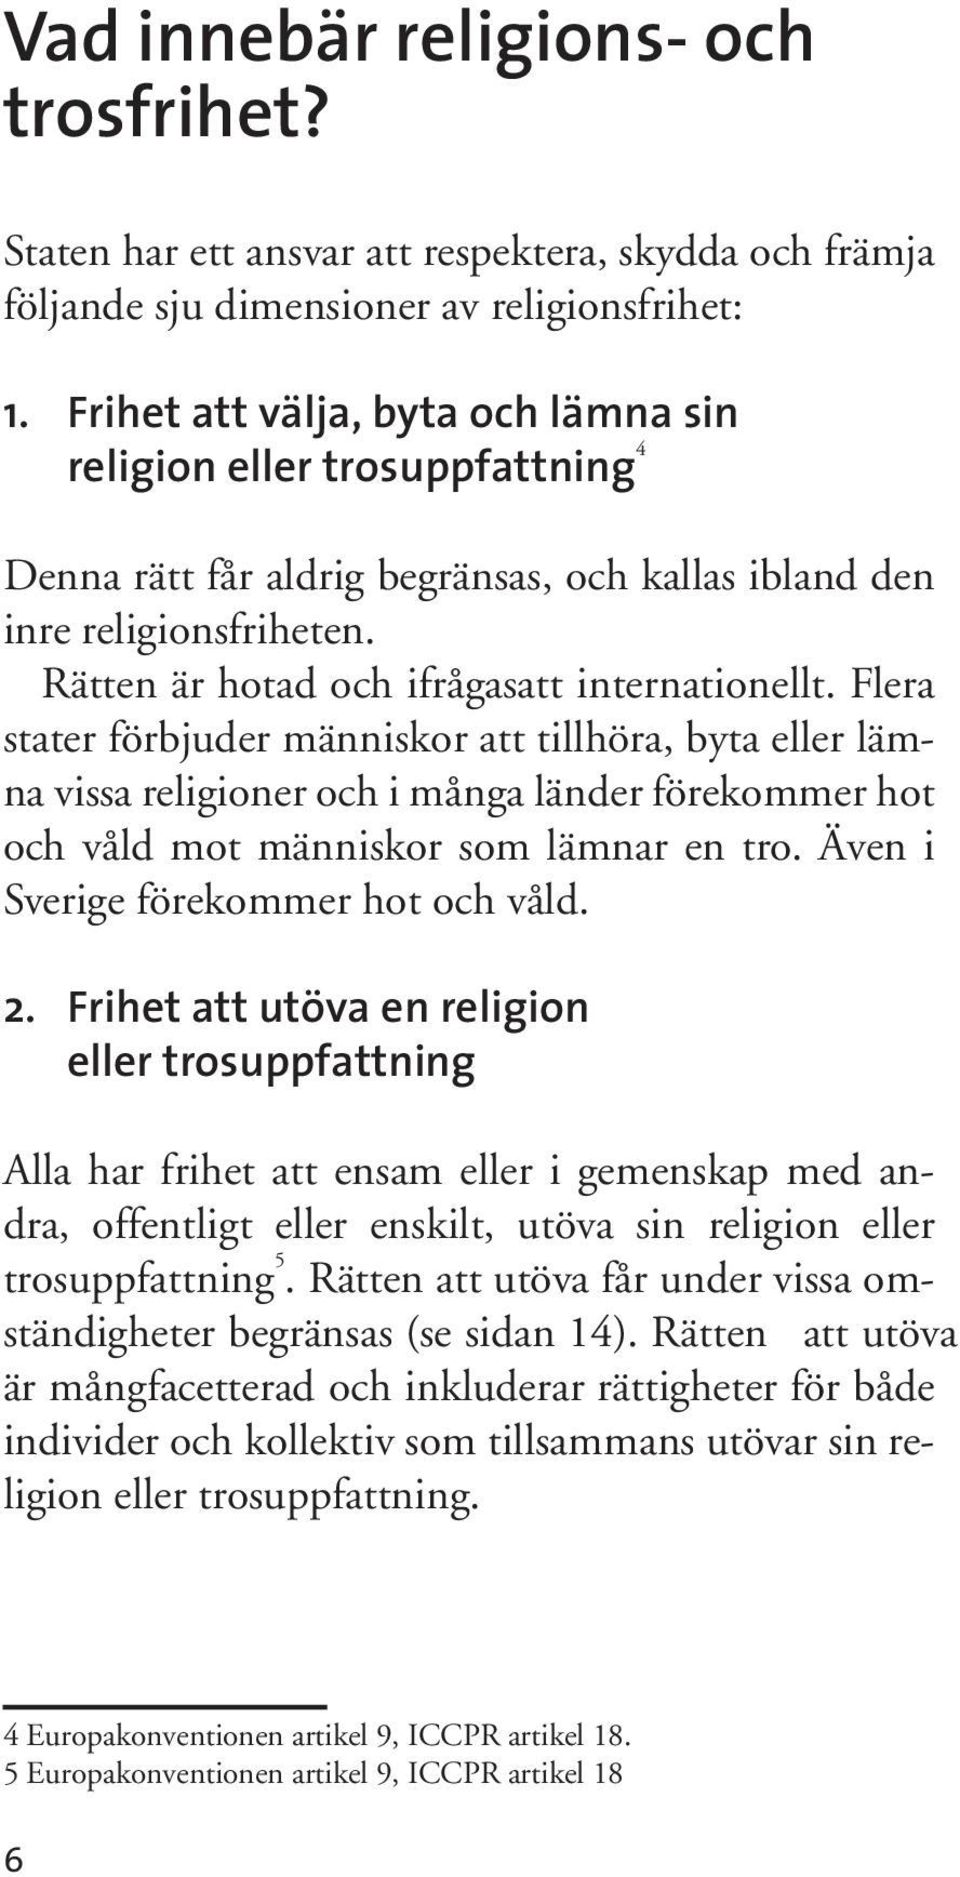 Flera stater förbjuder människor att tillhöra, byta eller lämna vissa religioner och i många länder förekommer hot och våld mot människor som lämnar en tro. Även i Sverige förekommer hot och våld. 2.